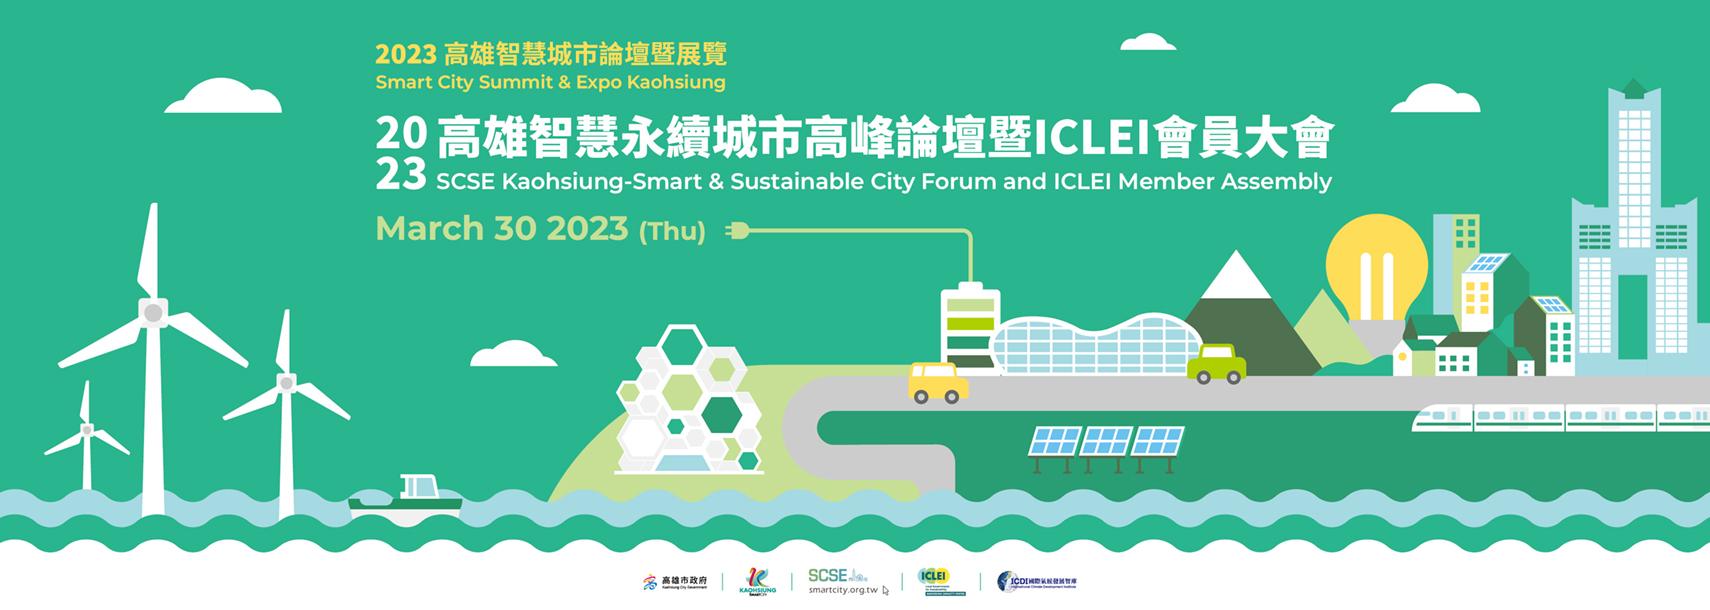 2023高雄智慧永續城市高峰論壇暨ICLEI會員大會